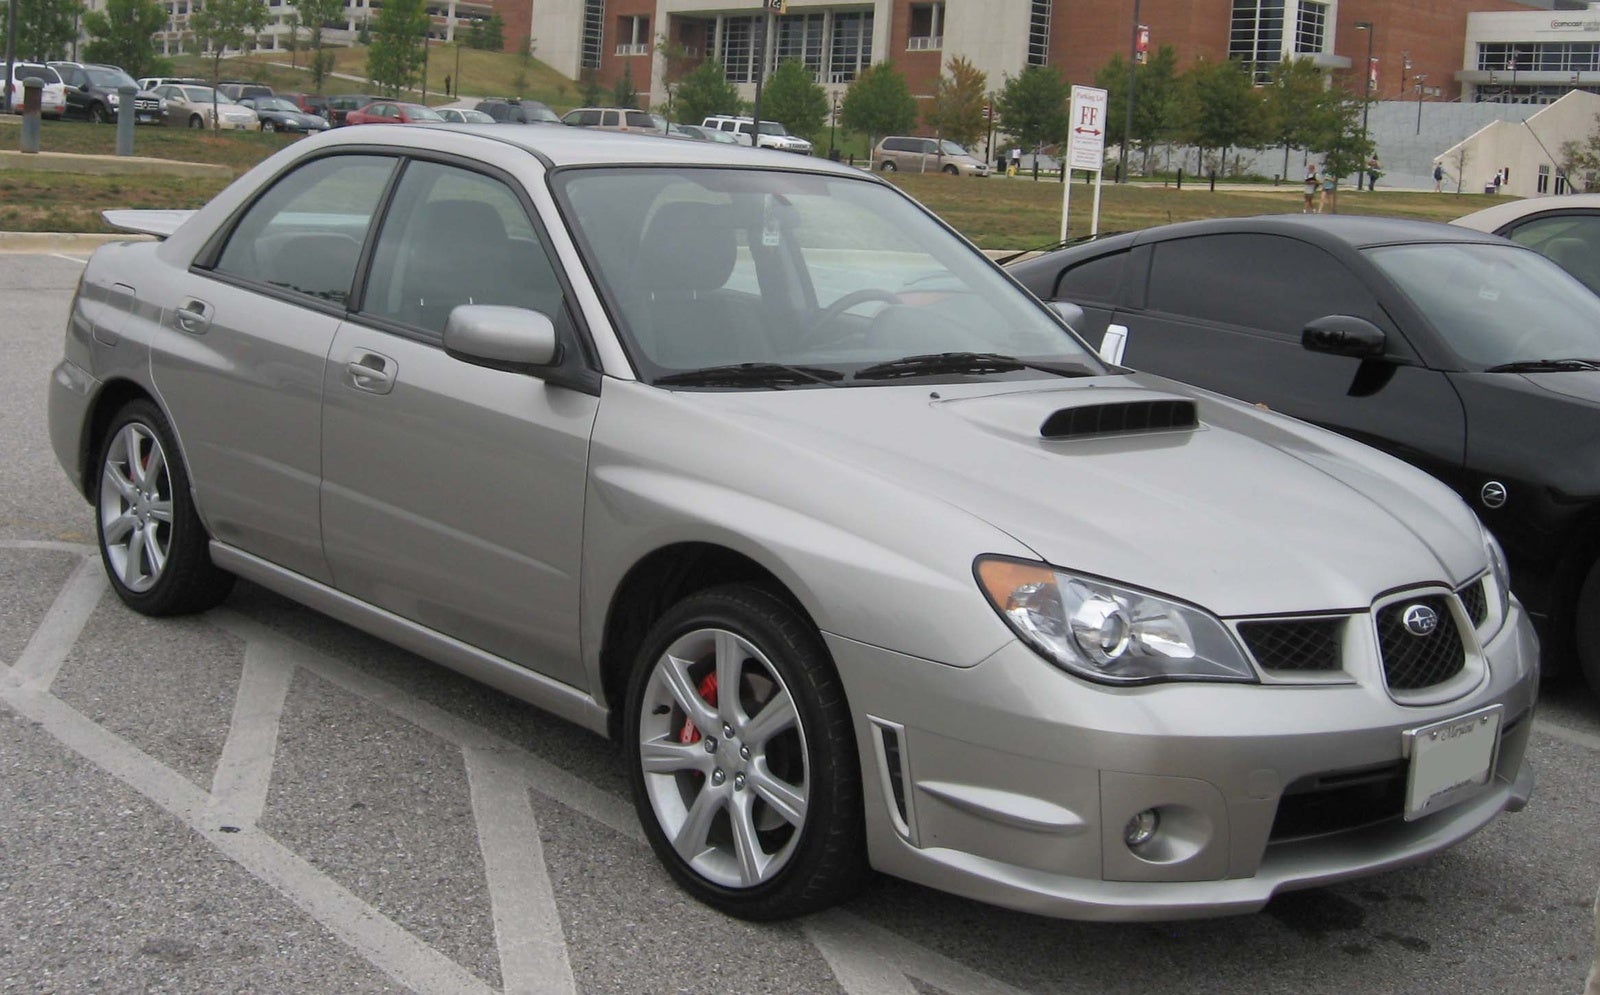 2006 Subaru Impreza Pictures CarGurus